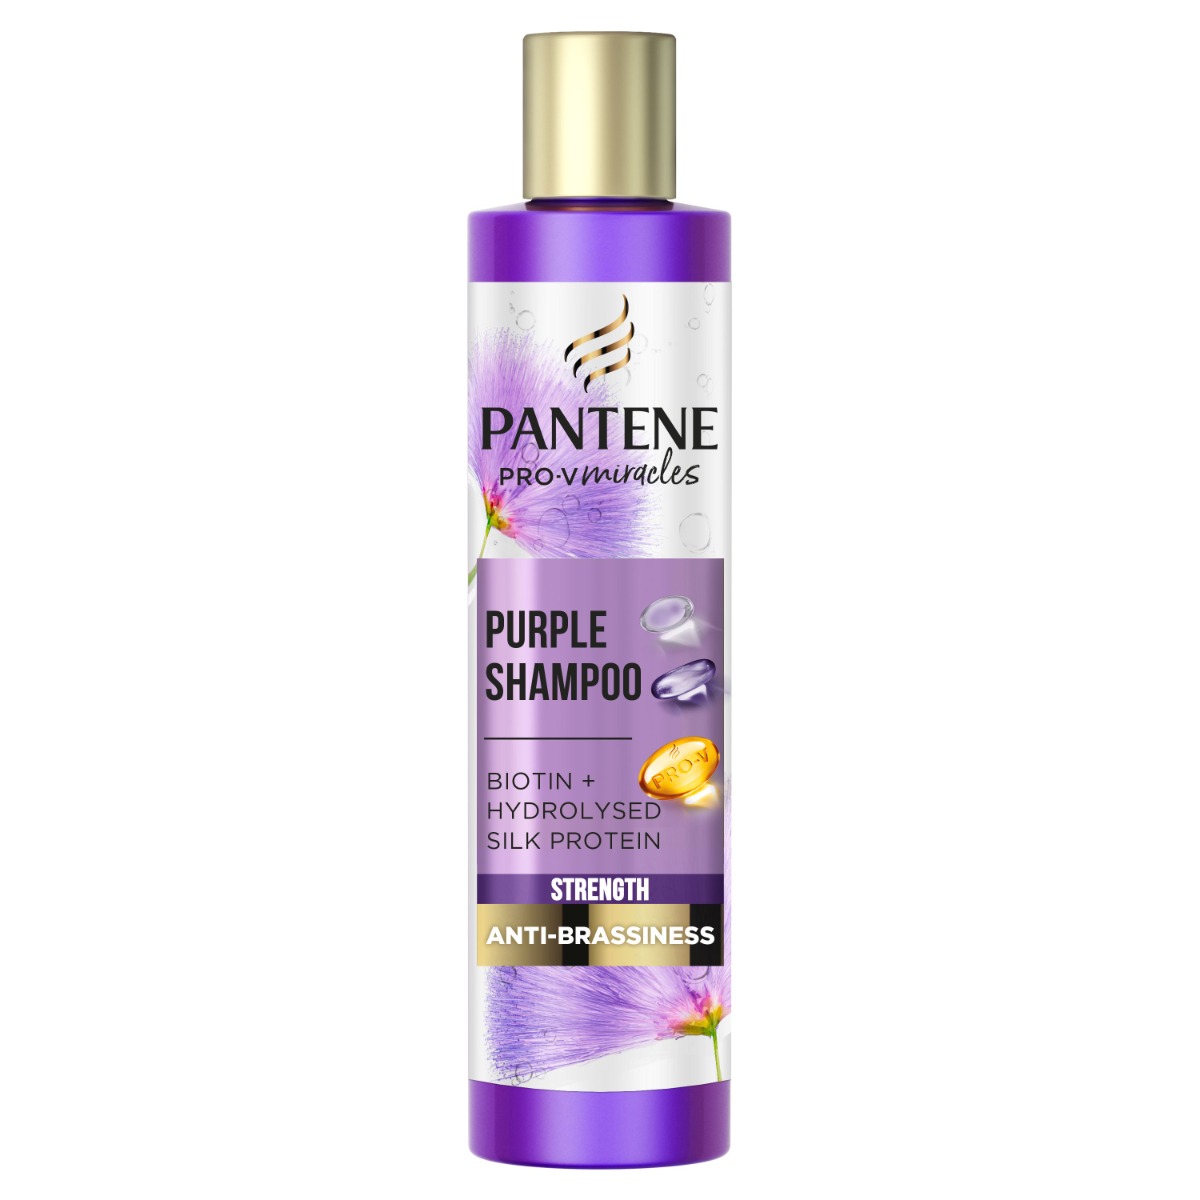 Pantene Pro-V Miracles Strength šampon 225 ml Pantene Pro-V